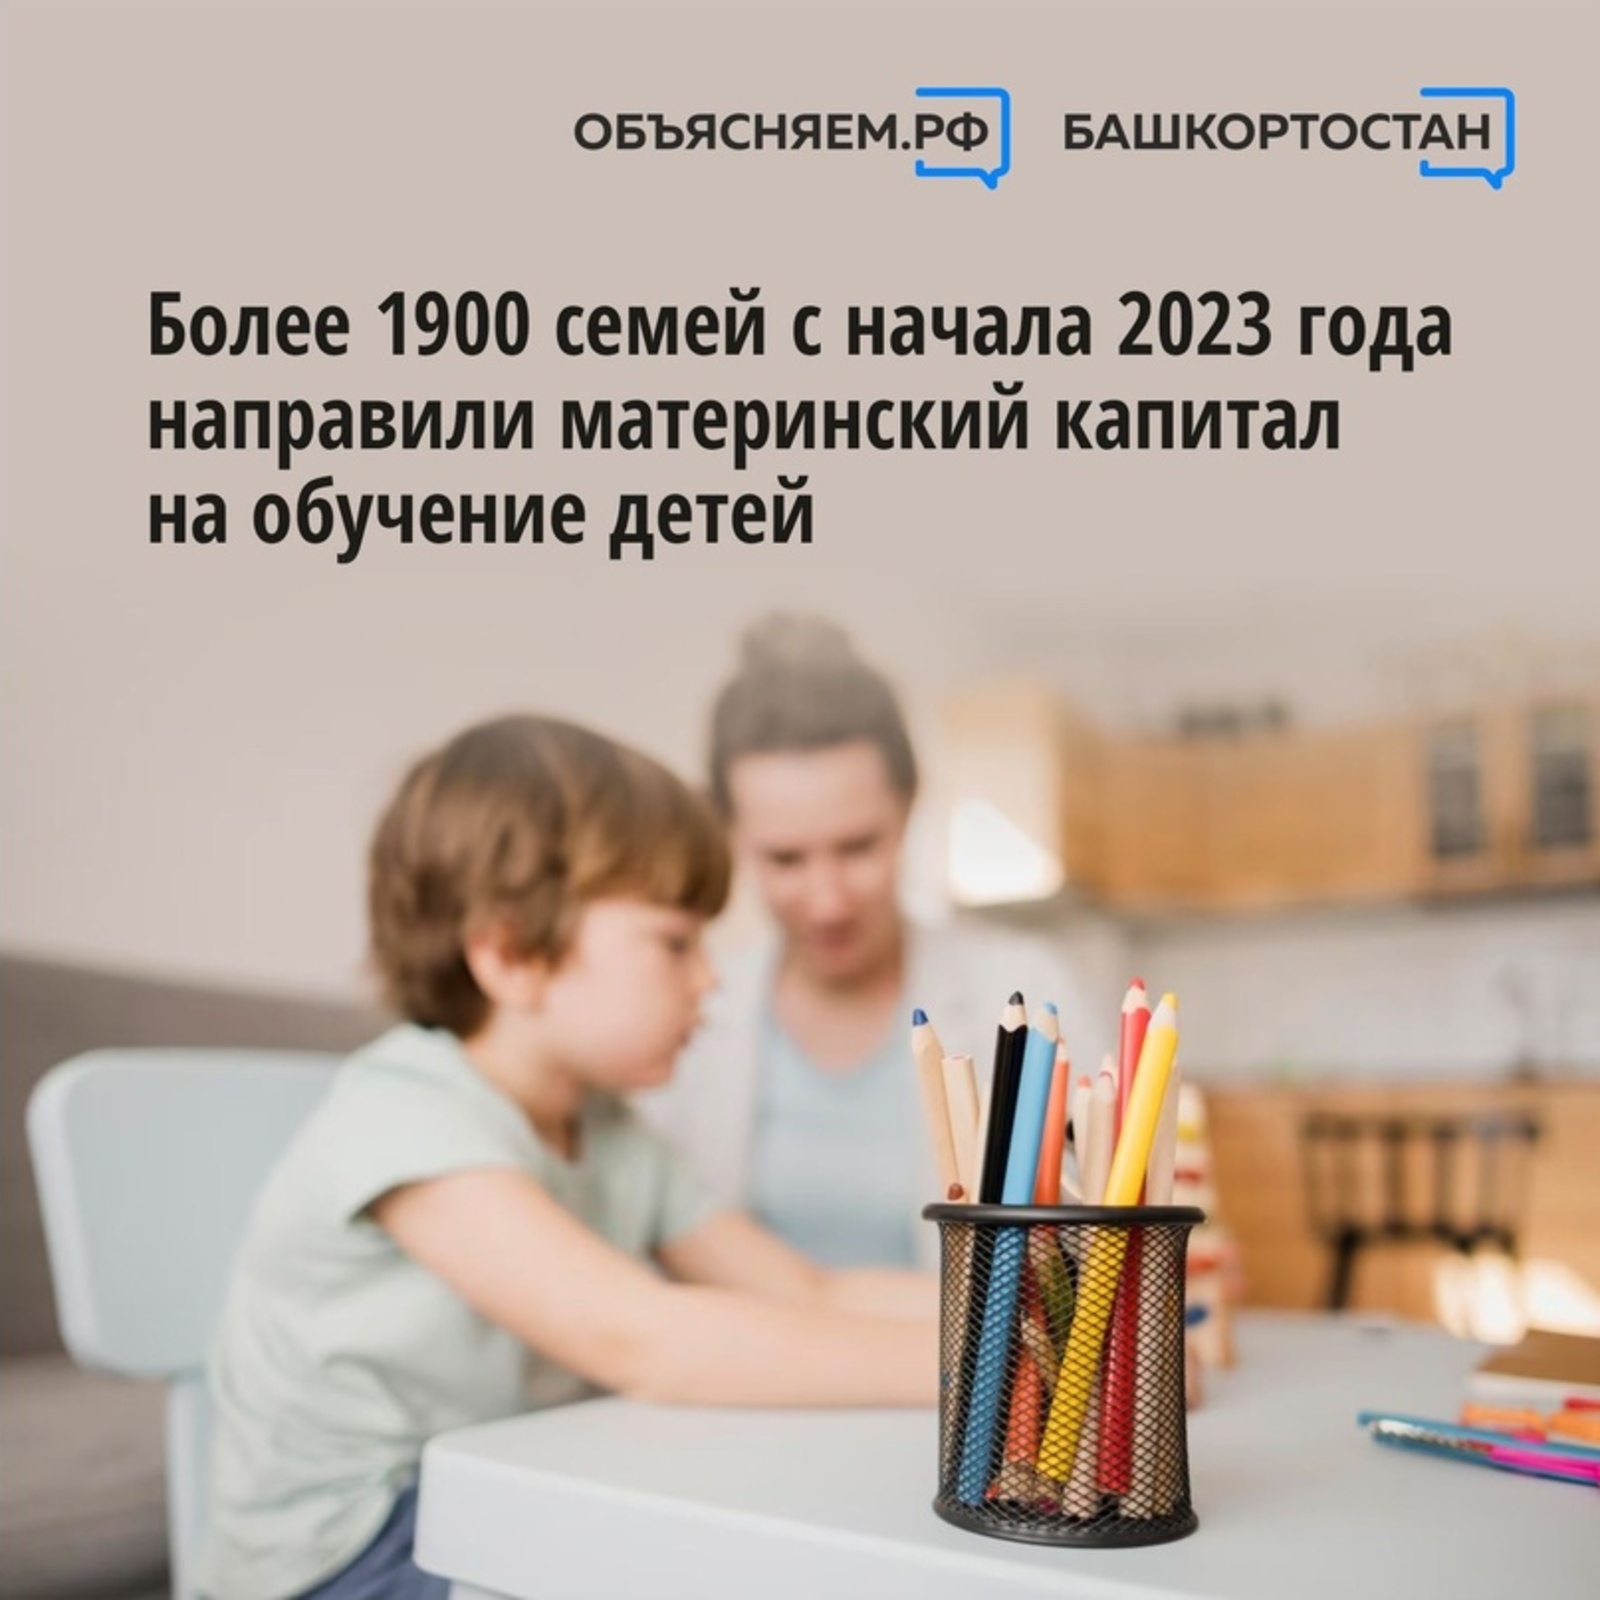 Более 1900 семей Республики Башкортостан с начала 2023 года направили маткапитал на обучение детей